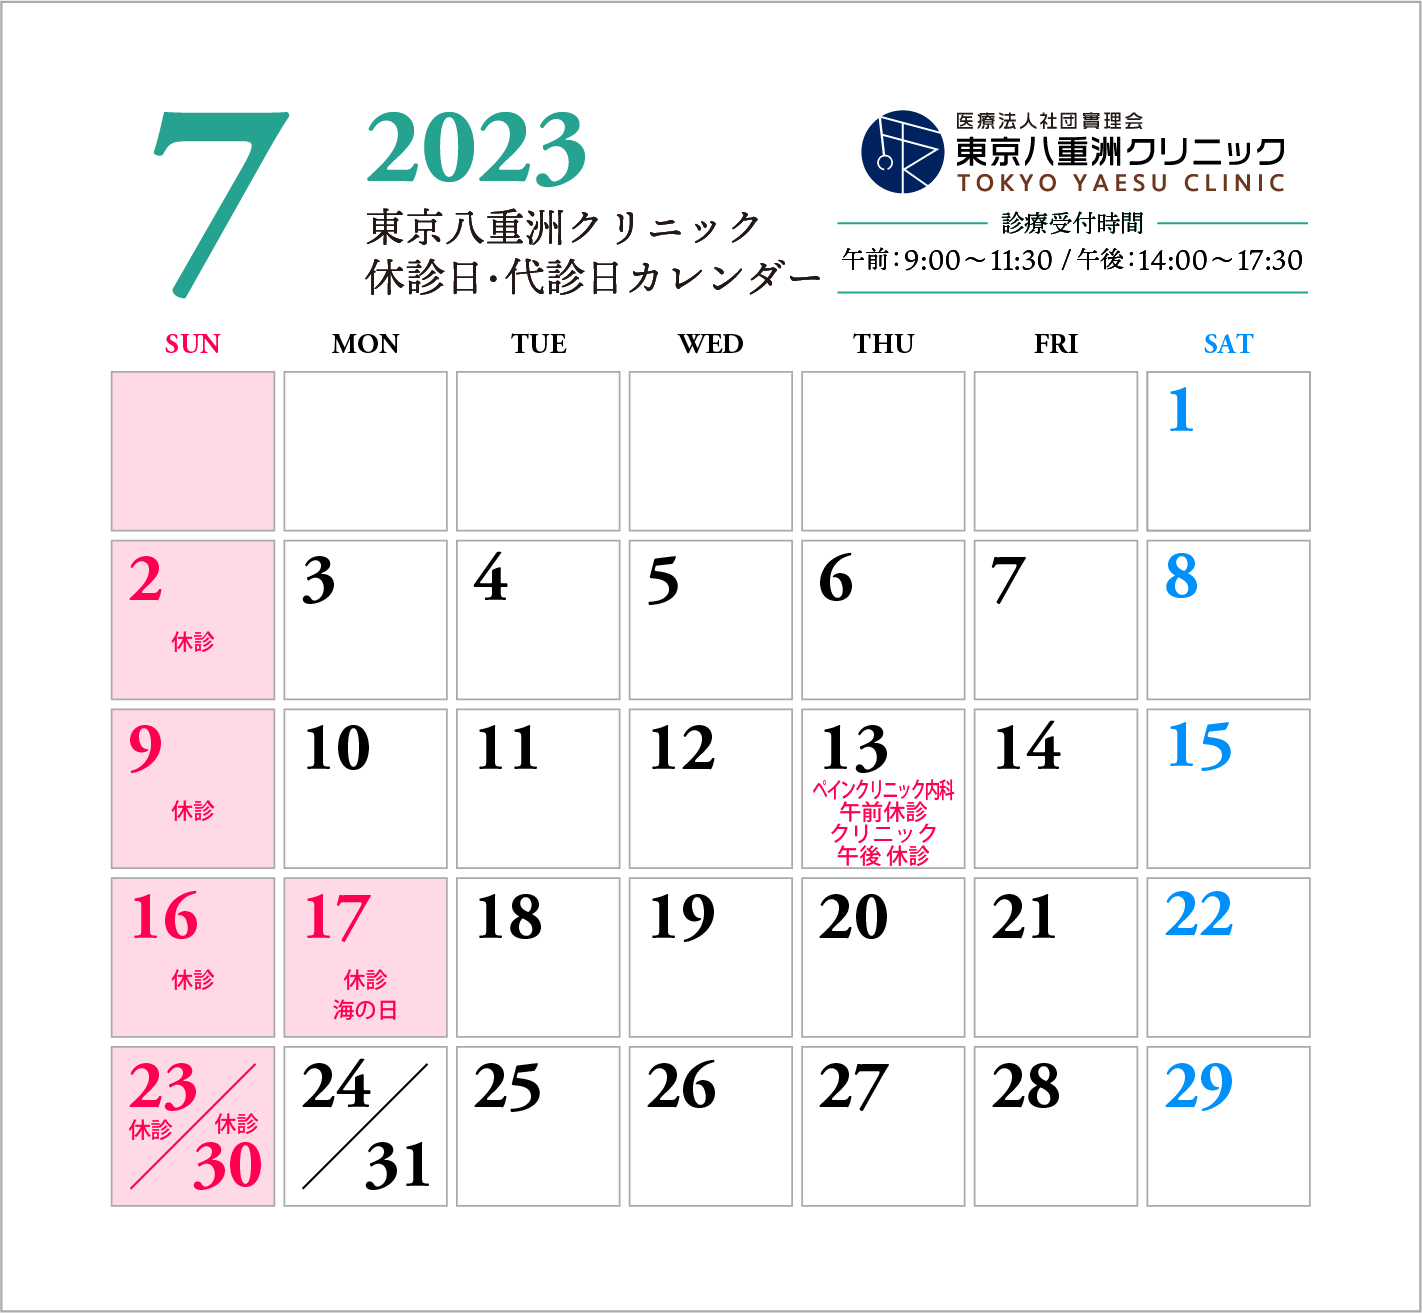 【更新】7月休診日・代診日のお知らせ